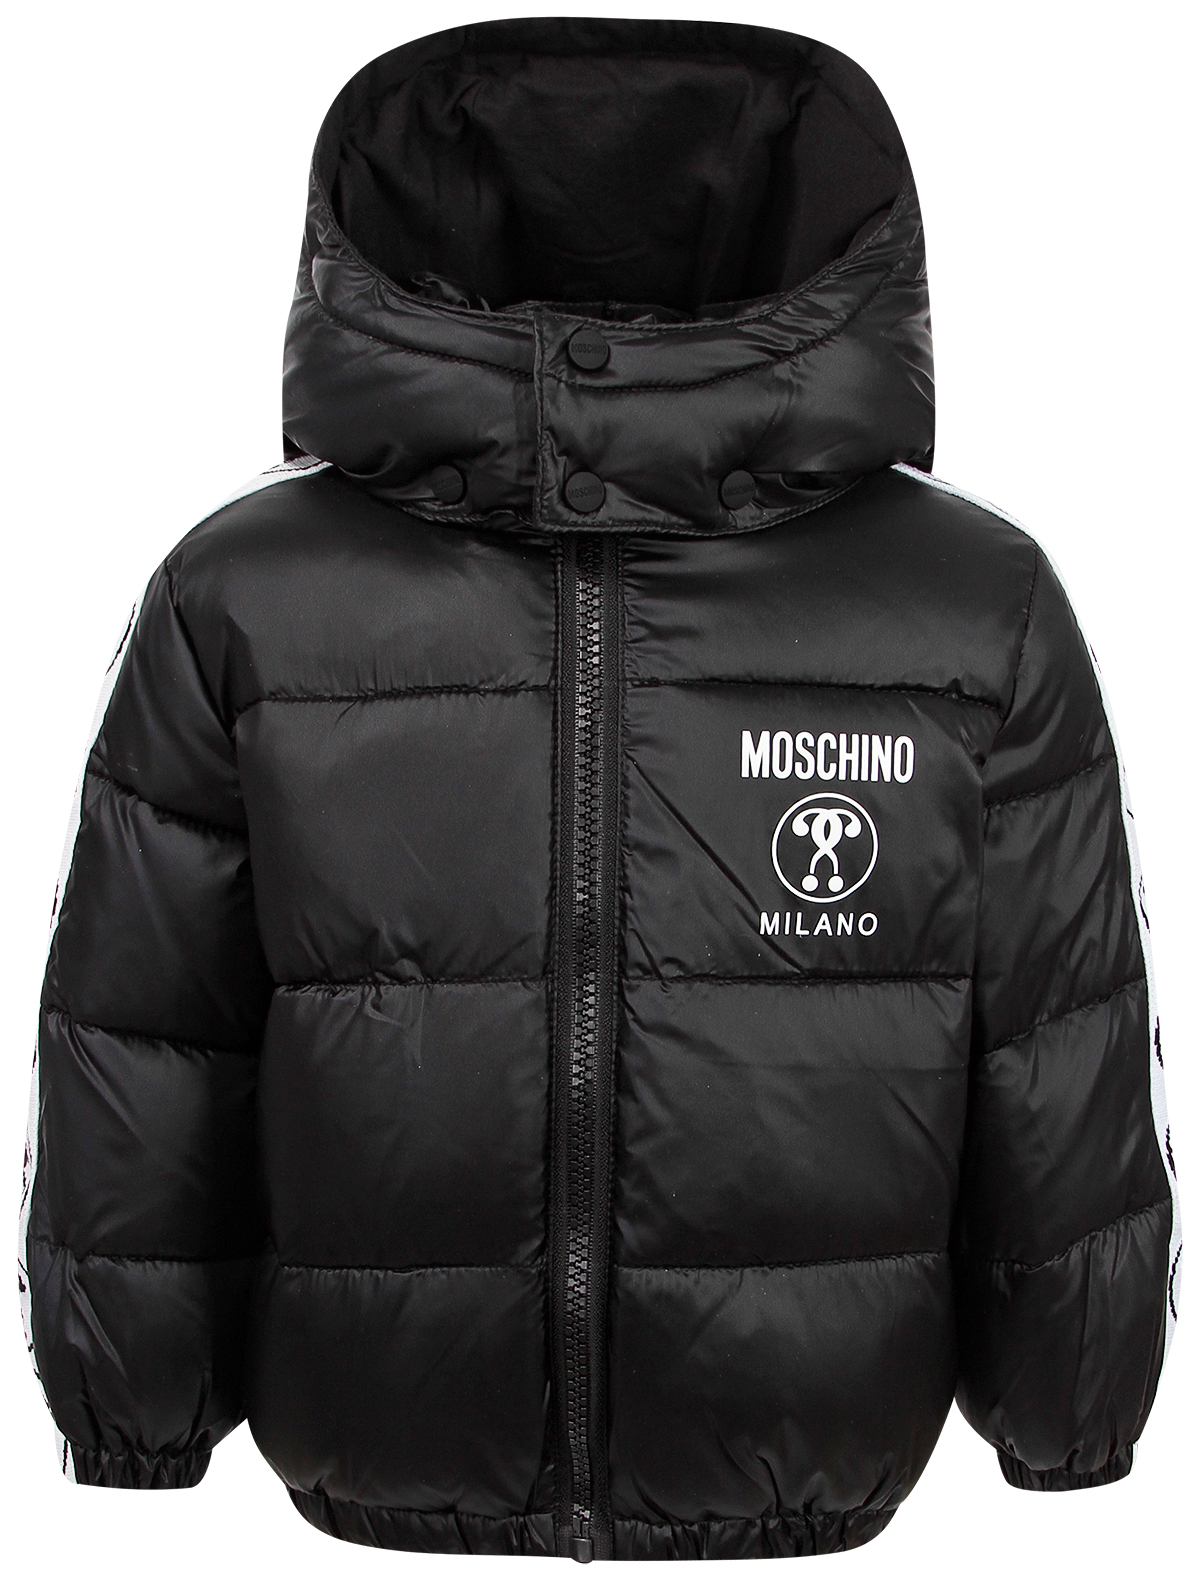 Куртка Moschino 2473963, цвет черный, размер 3 1074529280723 - фото 1